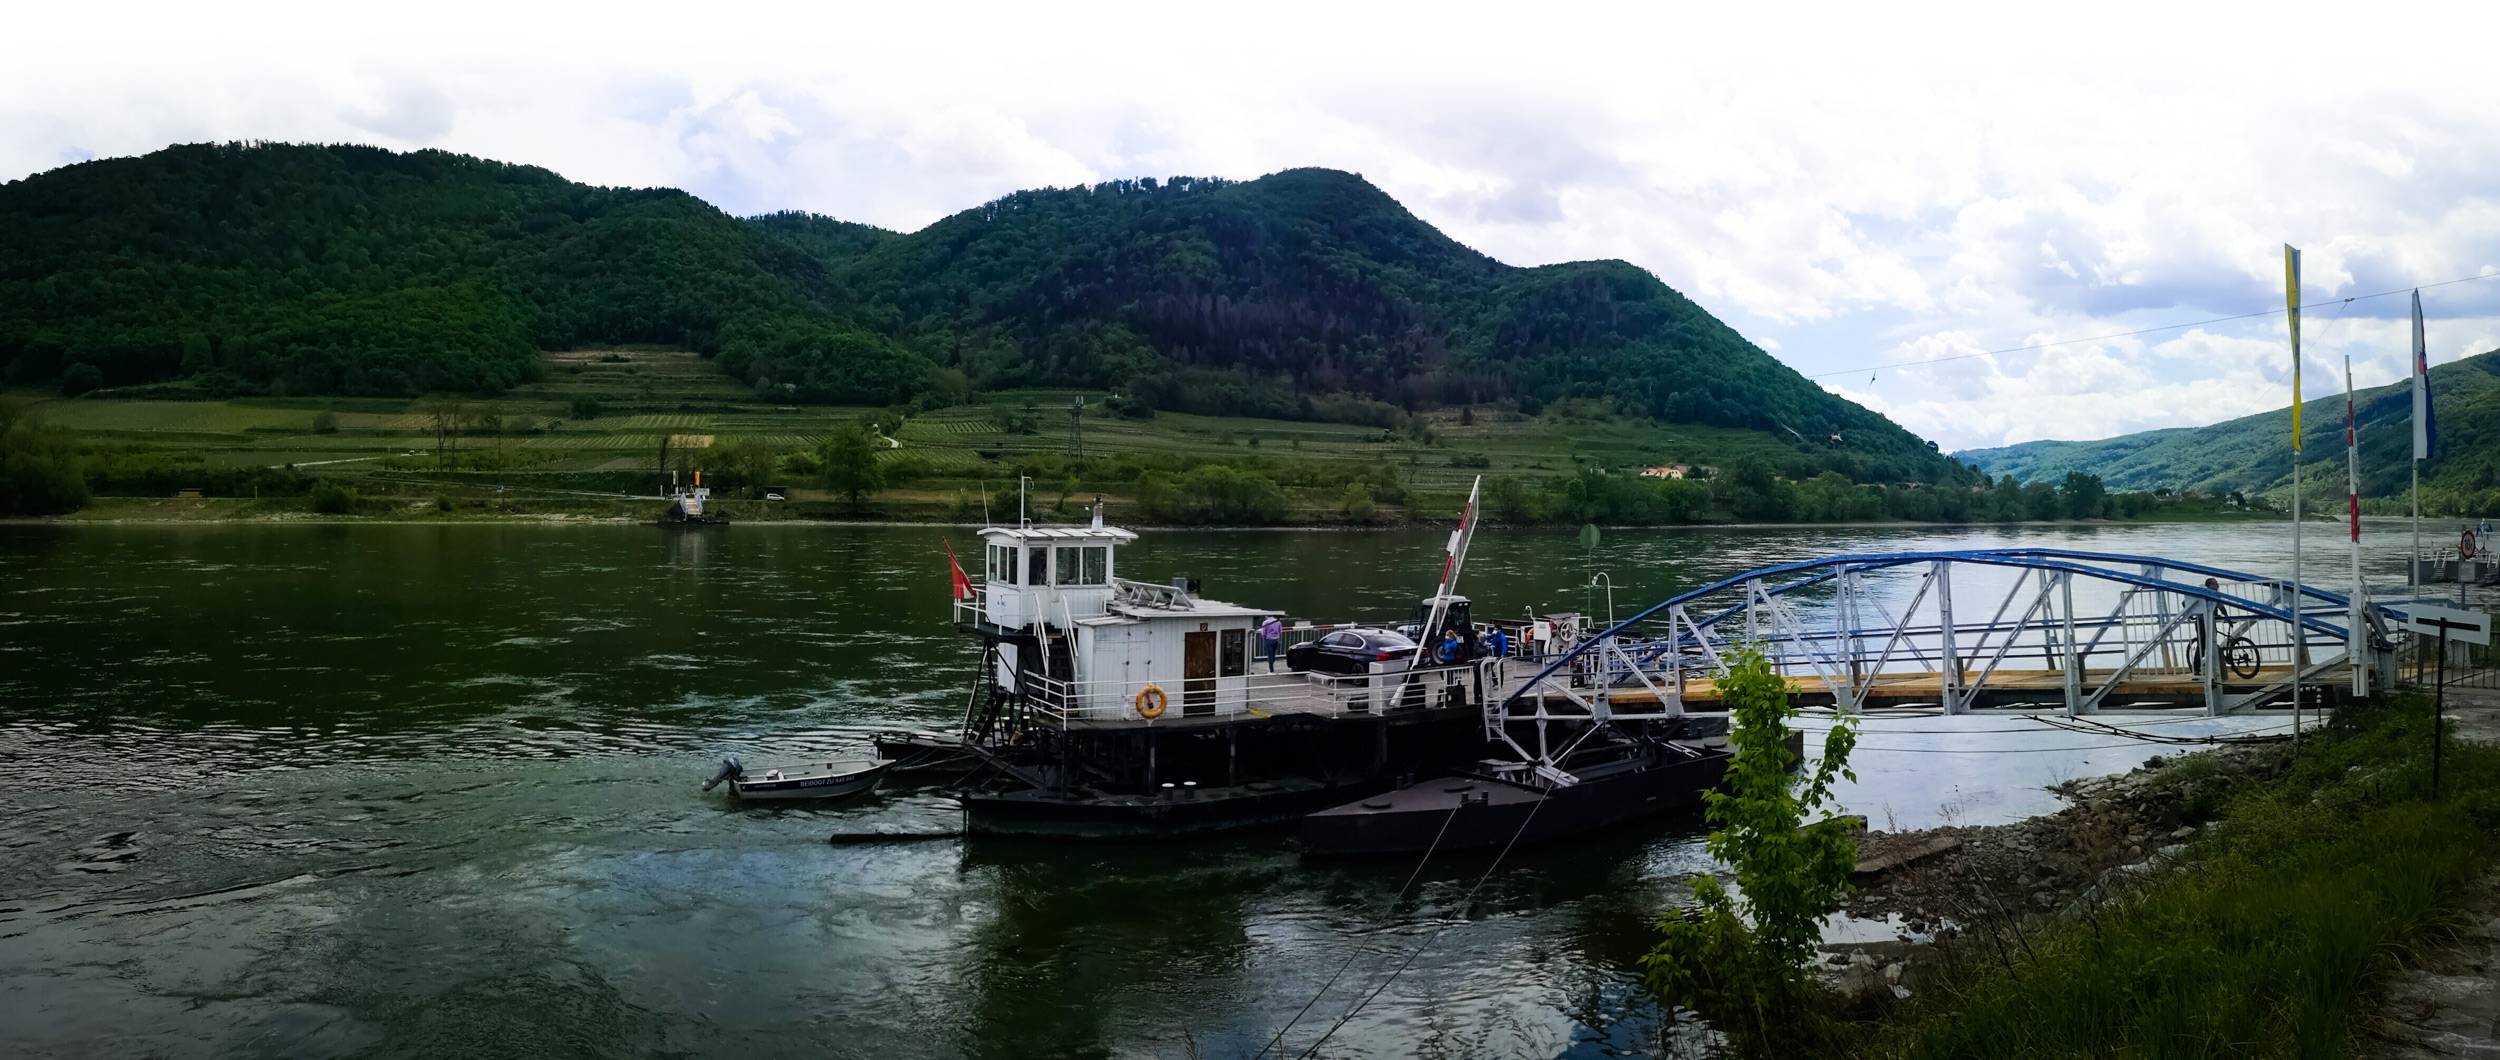 Spitz ferry over Danube river in Wachau, Austria